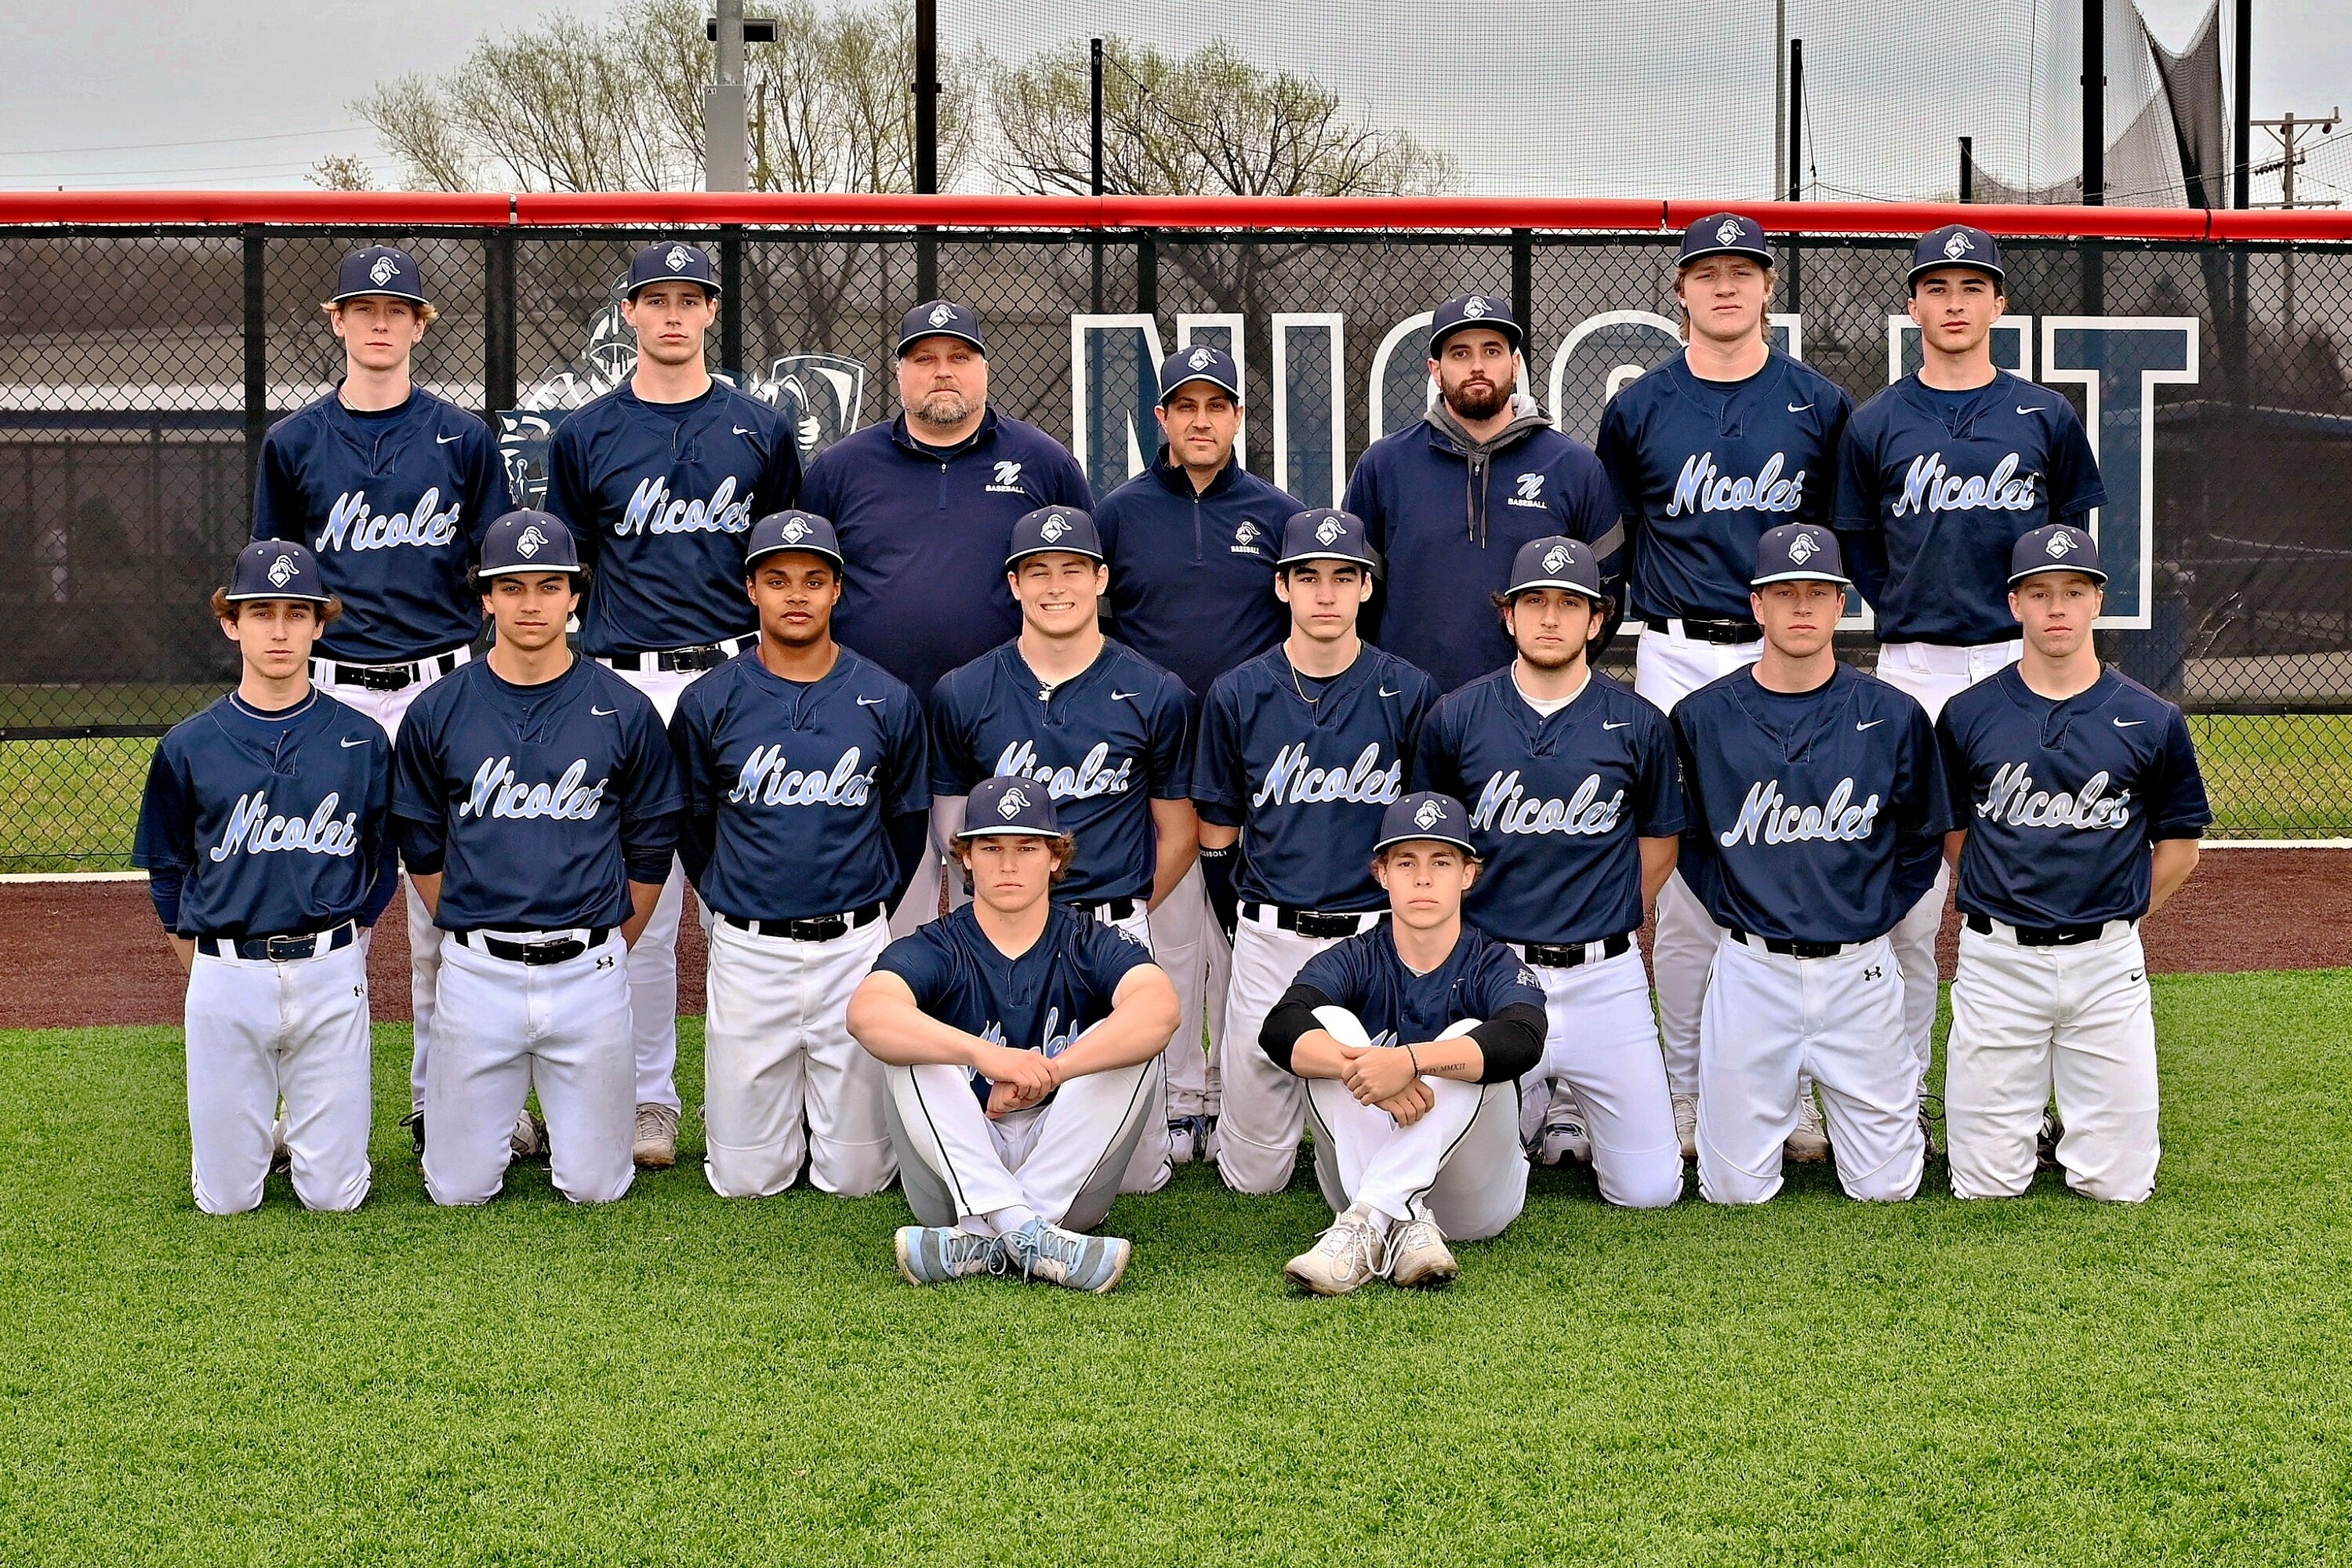 team picture for varsity Baseball